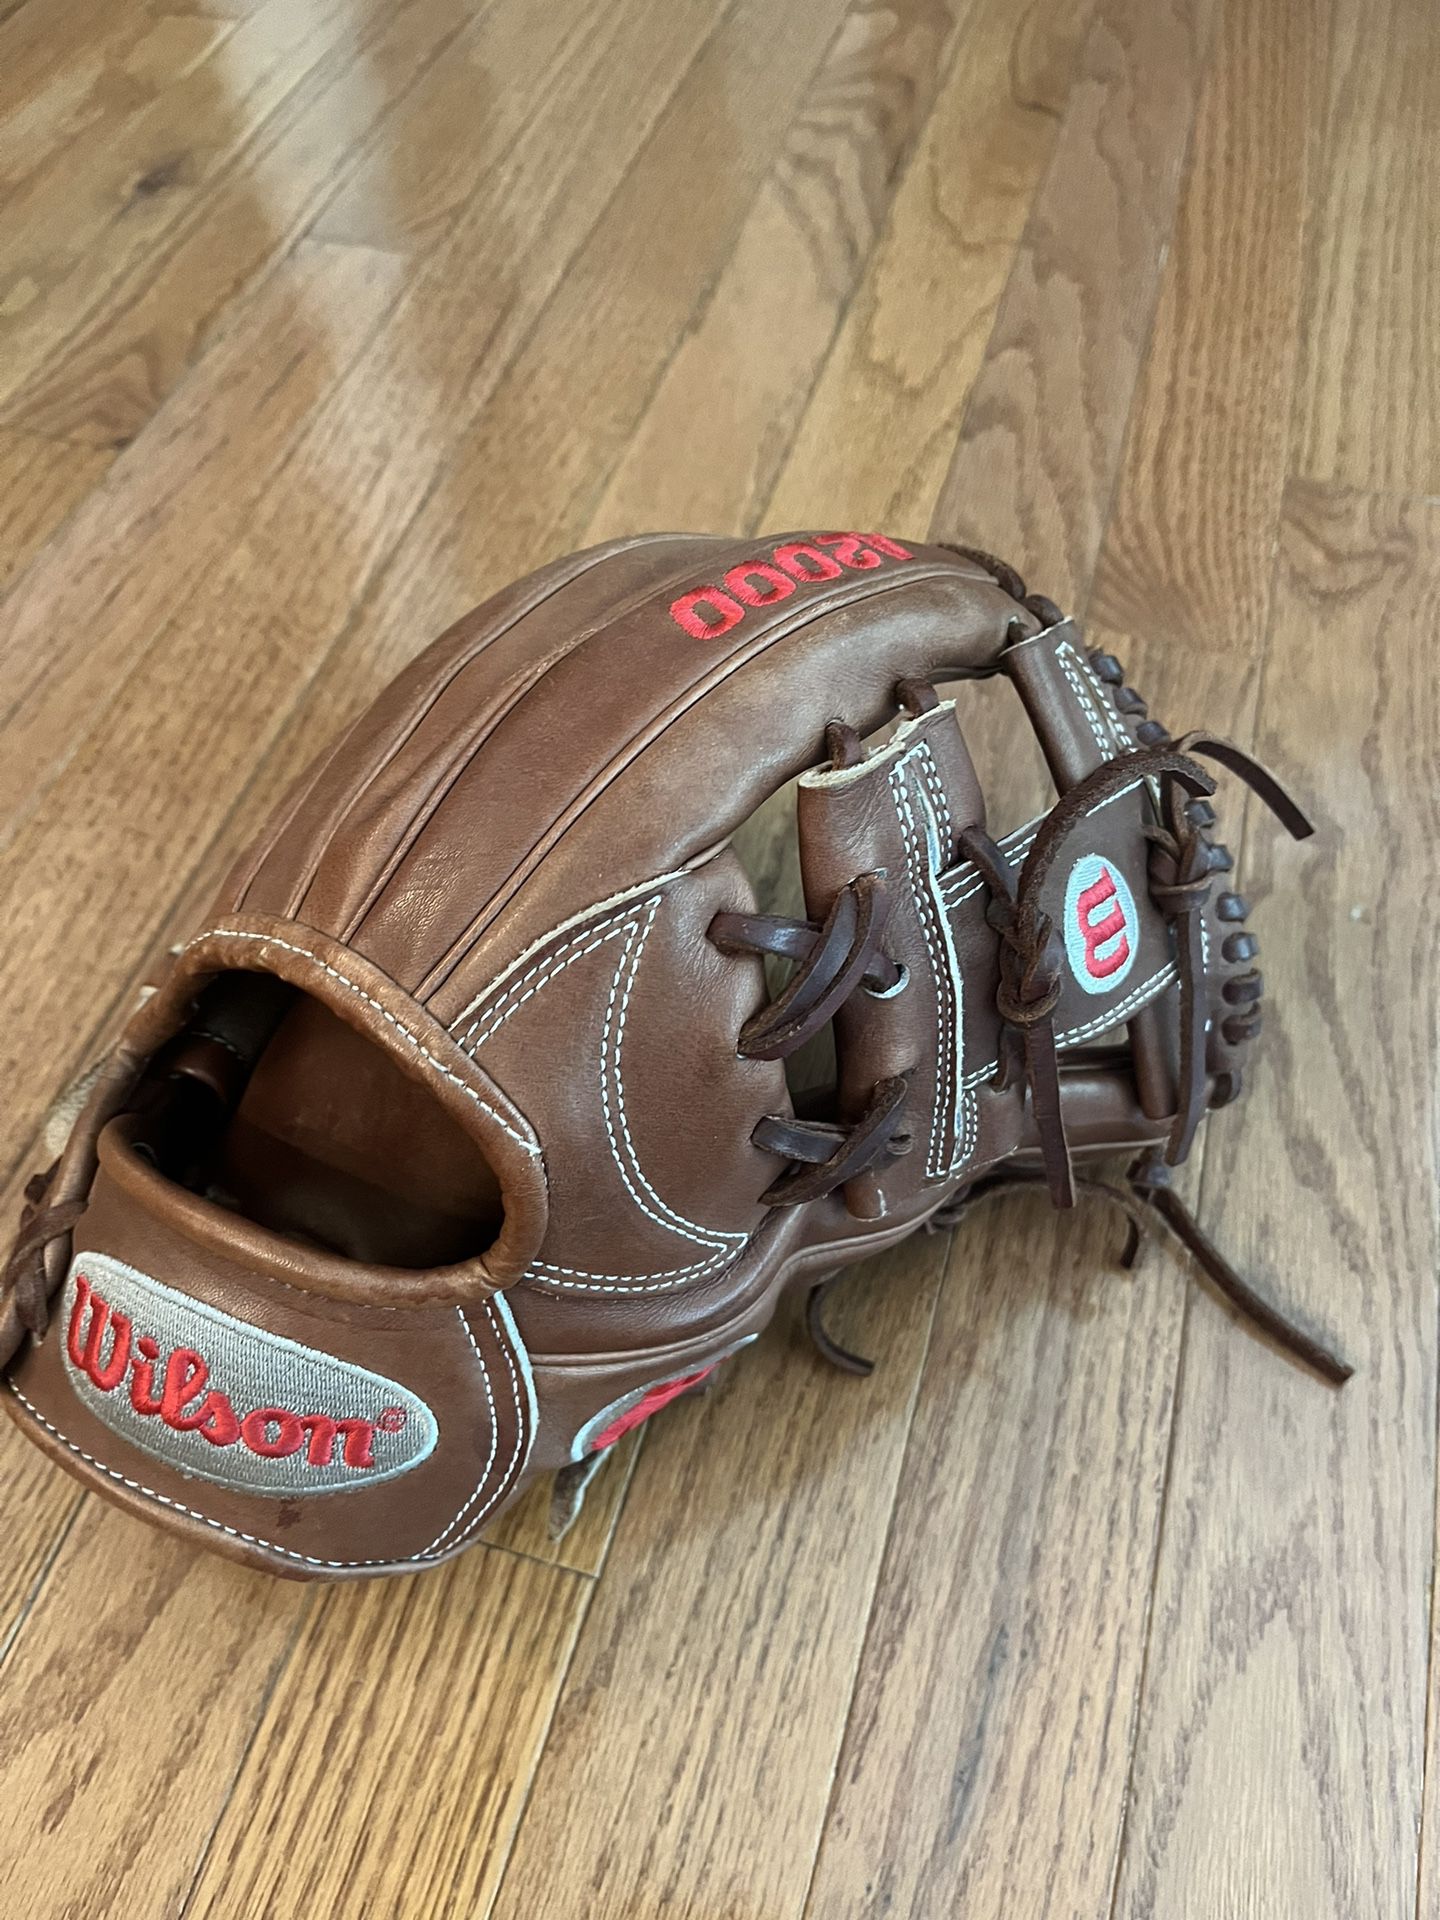 A2000 1787 11.75 Infield Baseball Glove